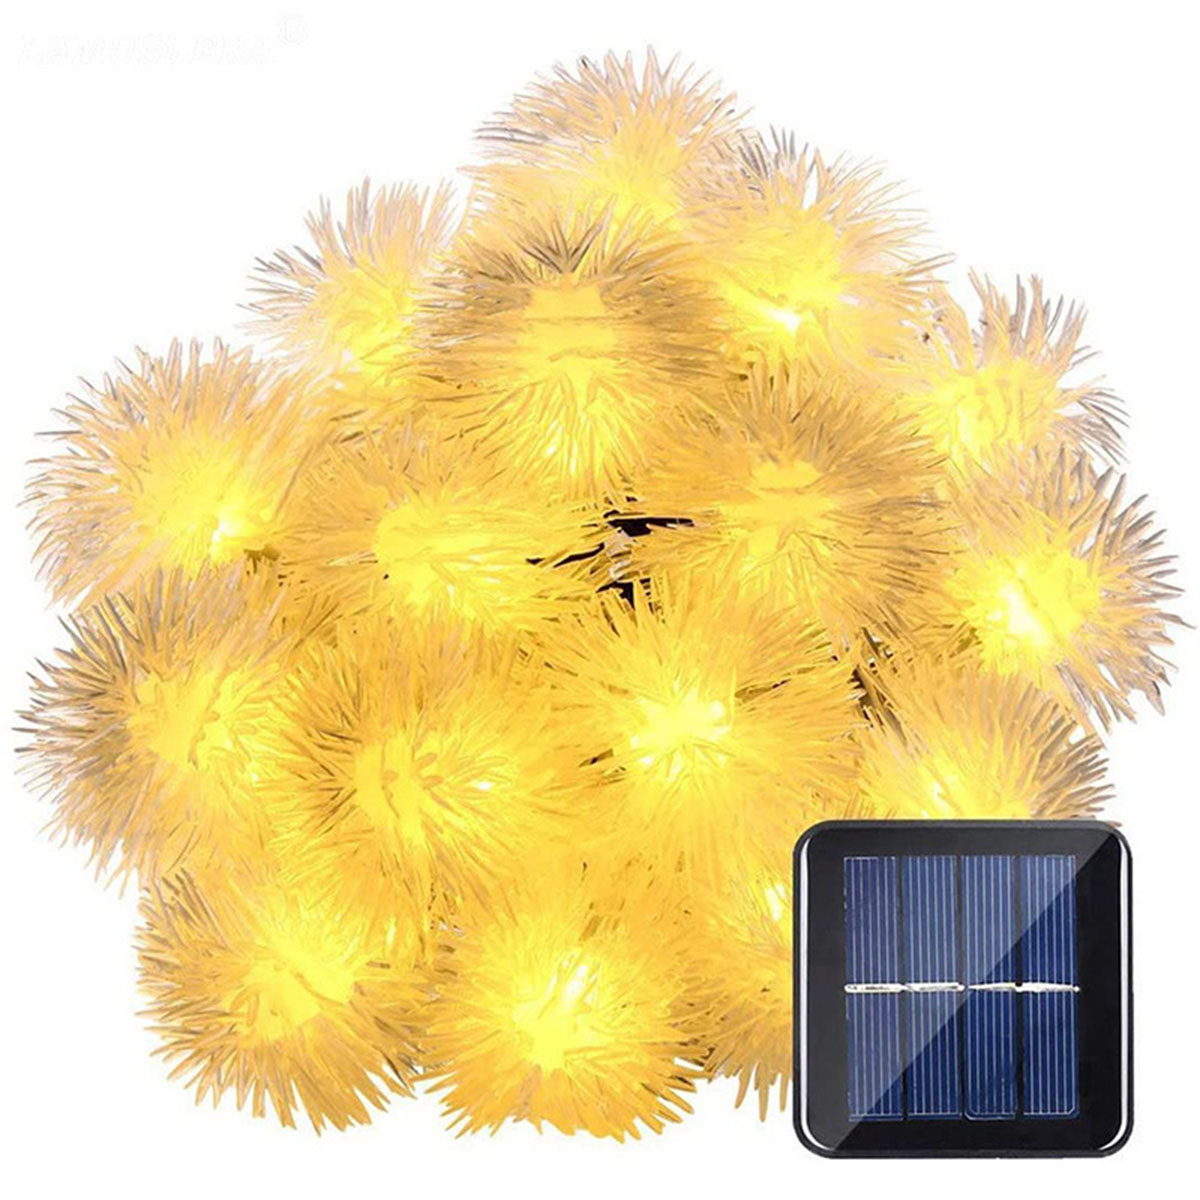 8 50 7 warmweiß, LAMON Solar-Lichterketten, Funktionen Warmweiß Haarballen-Lampe, Haarballenlampe Solarleuchte, Meter Leuchten